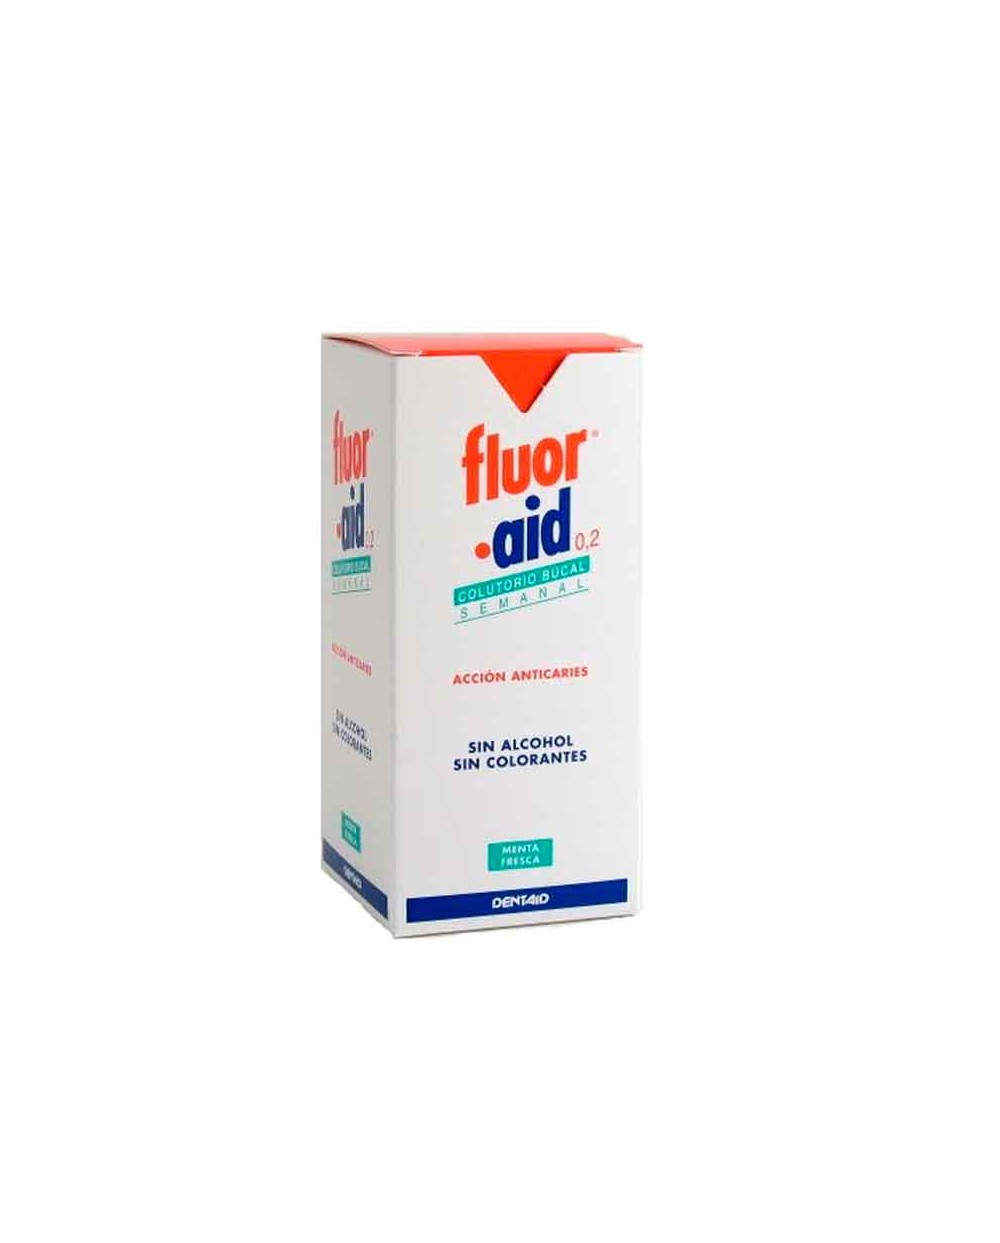 Fluor Aid 0,2 Dentaid colutorio semanal anticaries – 150 ml.